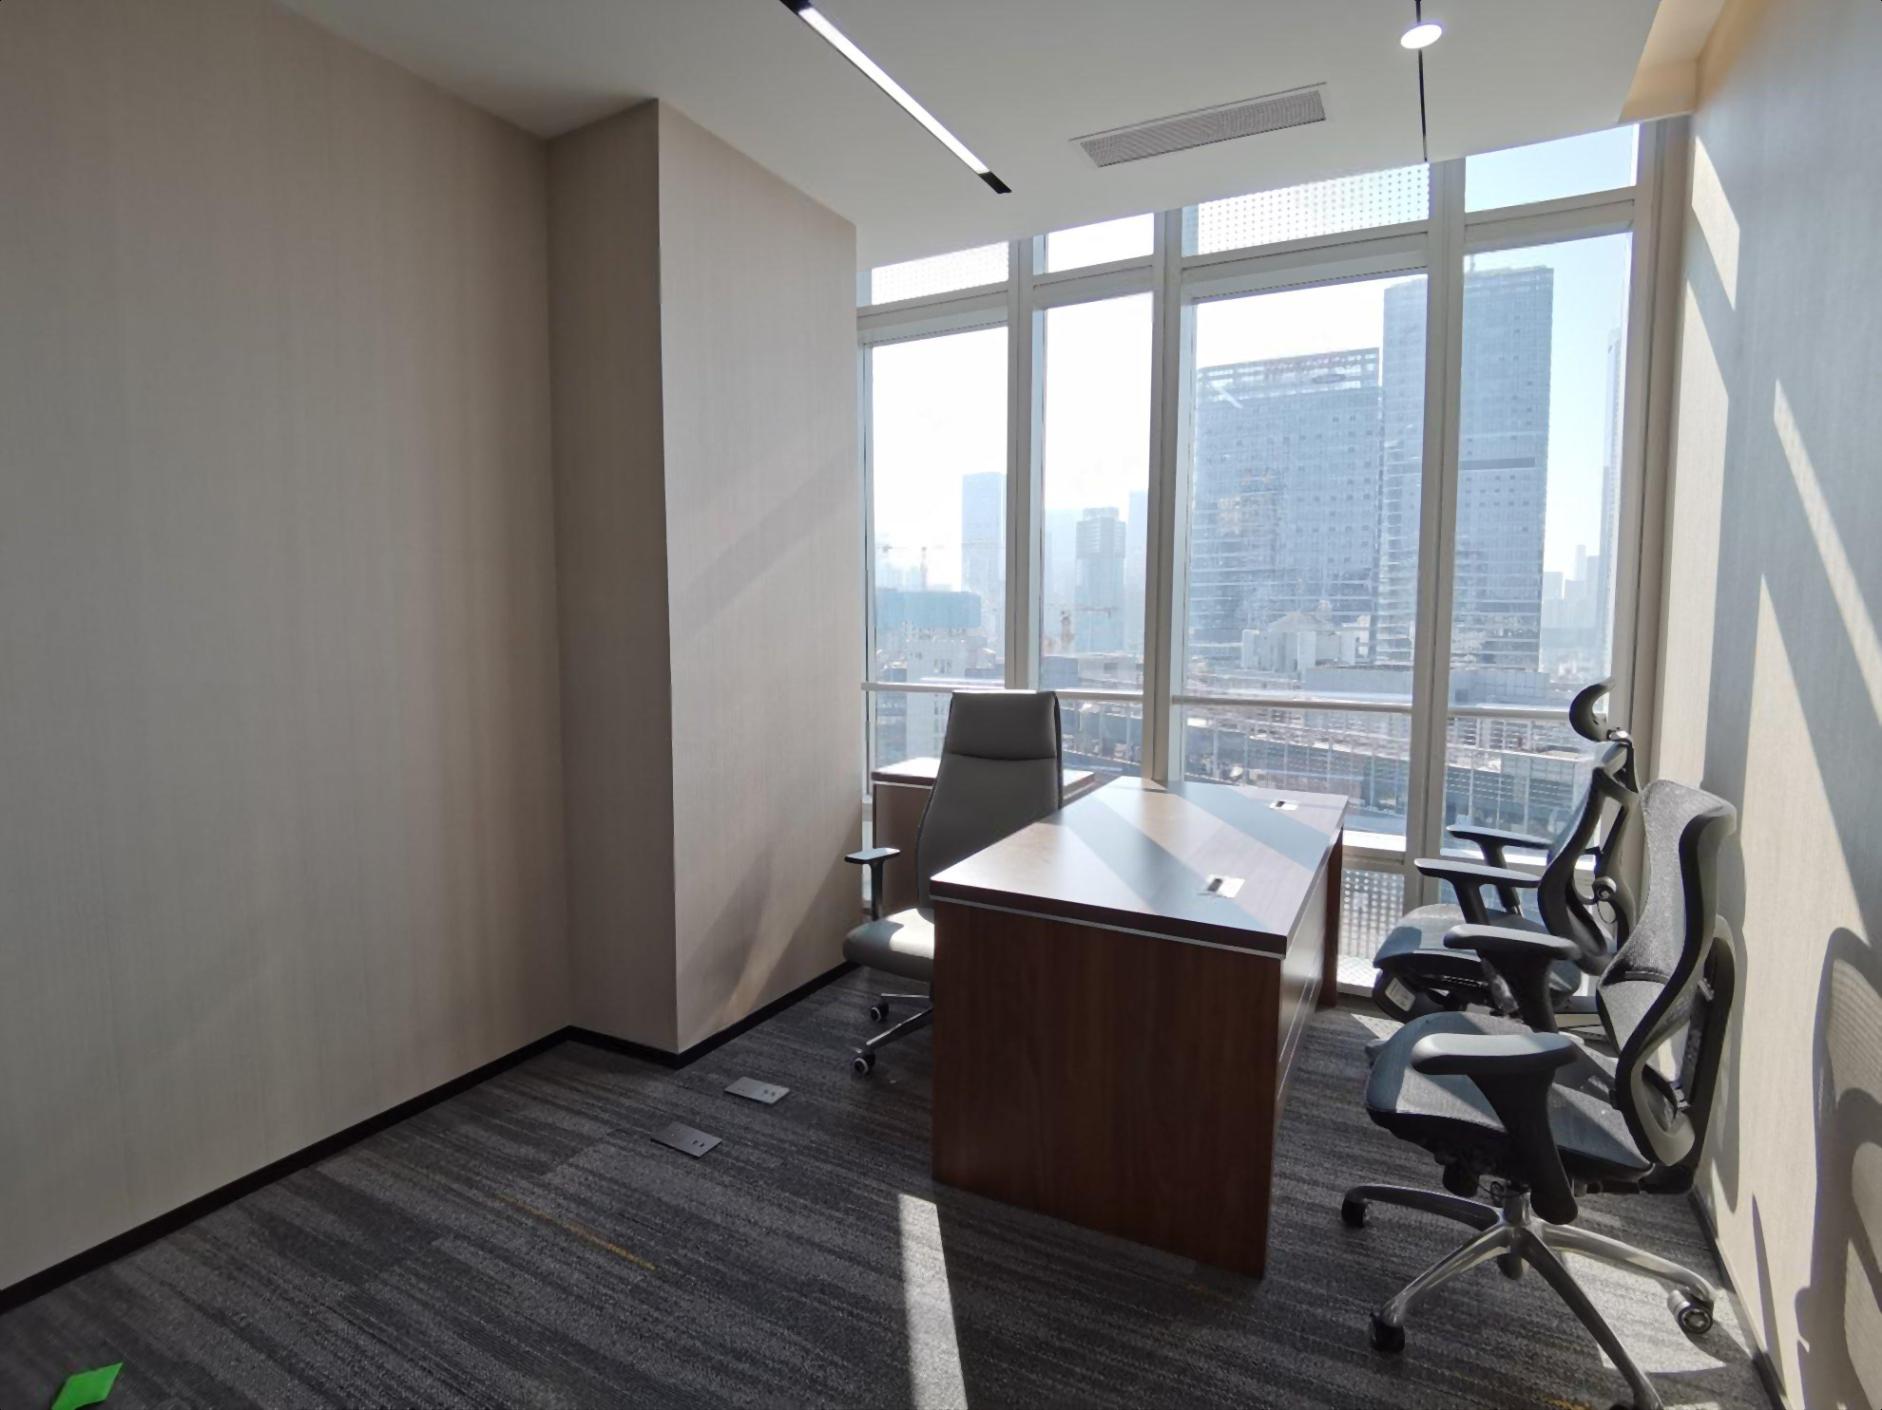 深圳北优城商务中心70平起精装带家私空调办公室出租电商